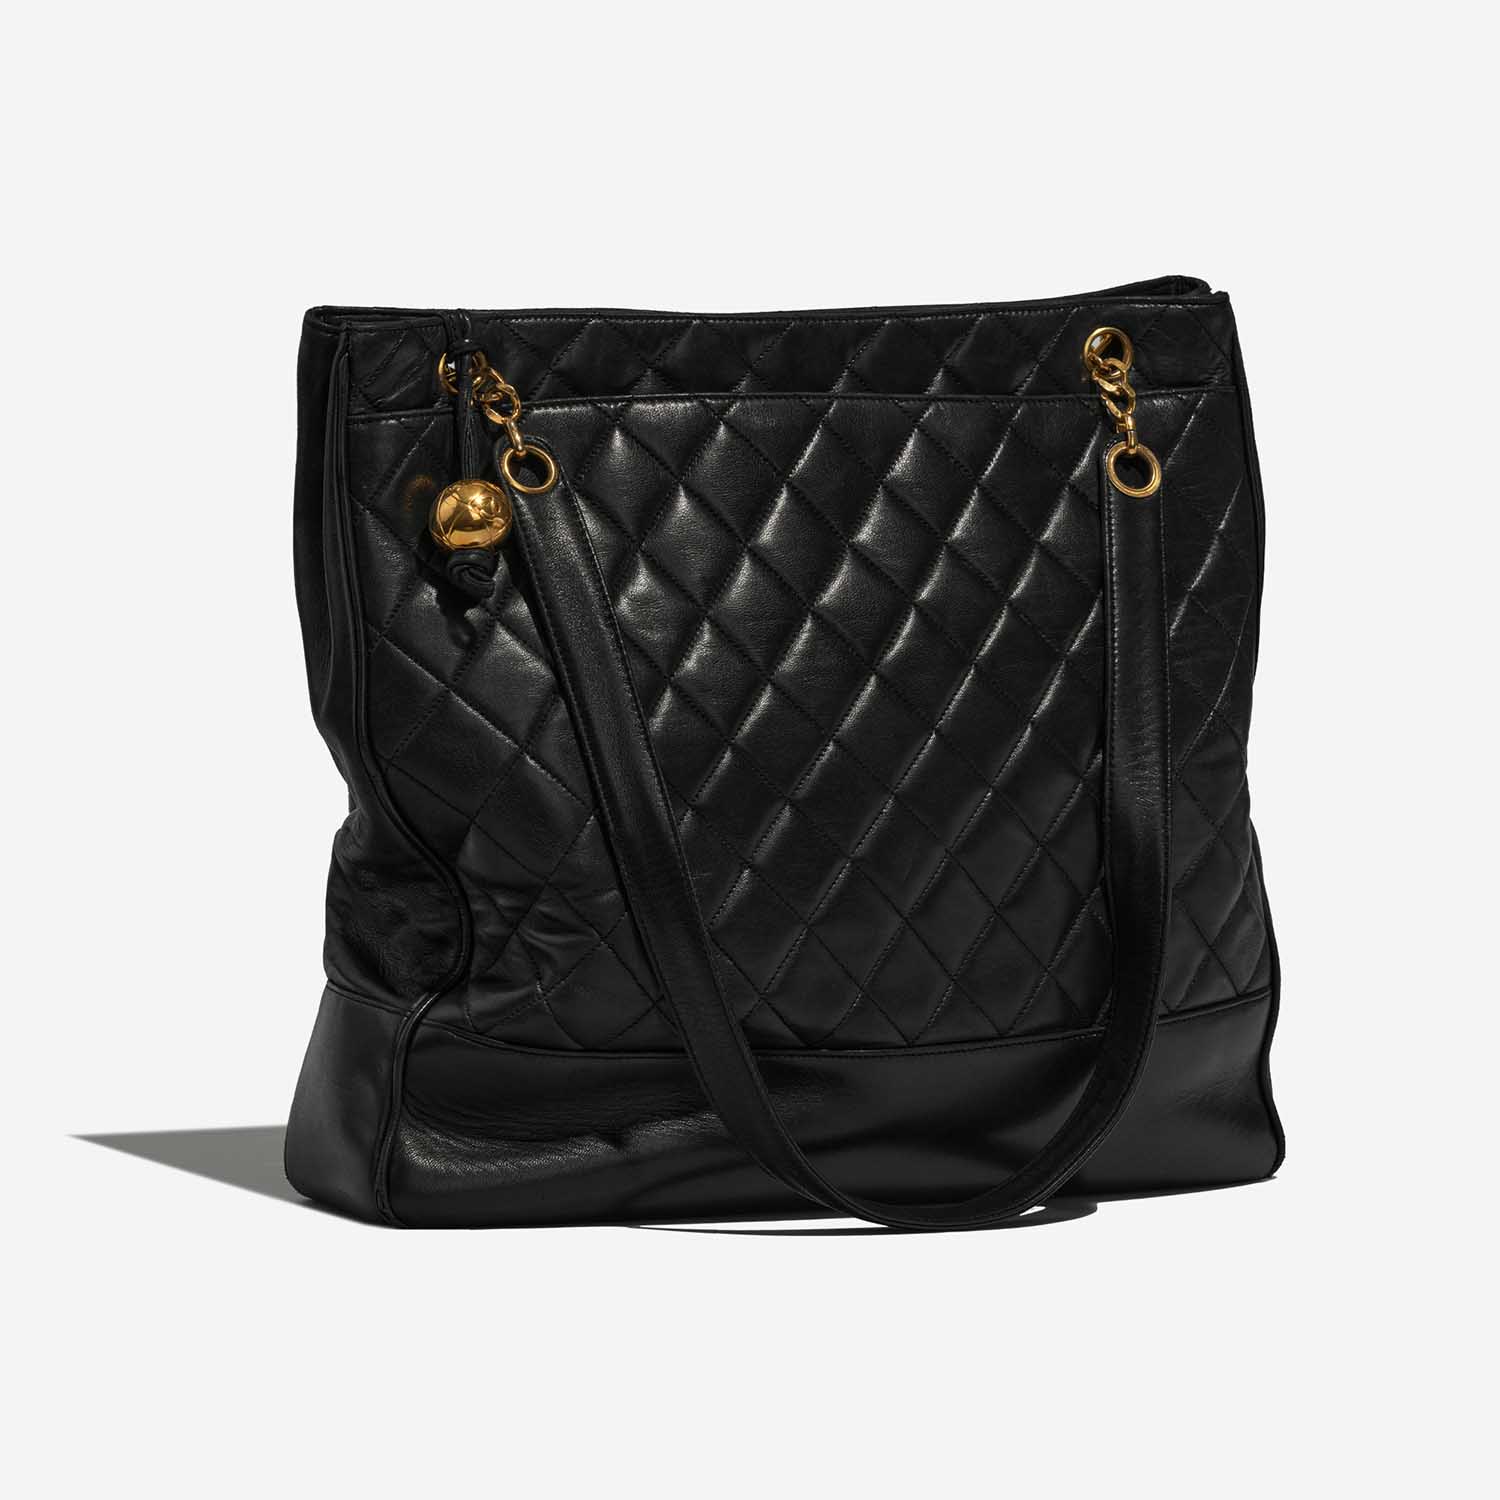 Chanel ShoppingTote Black Side Front | Verkaufen Sie Ihre Designertasche auf Saclab.com